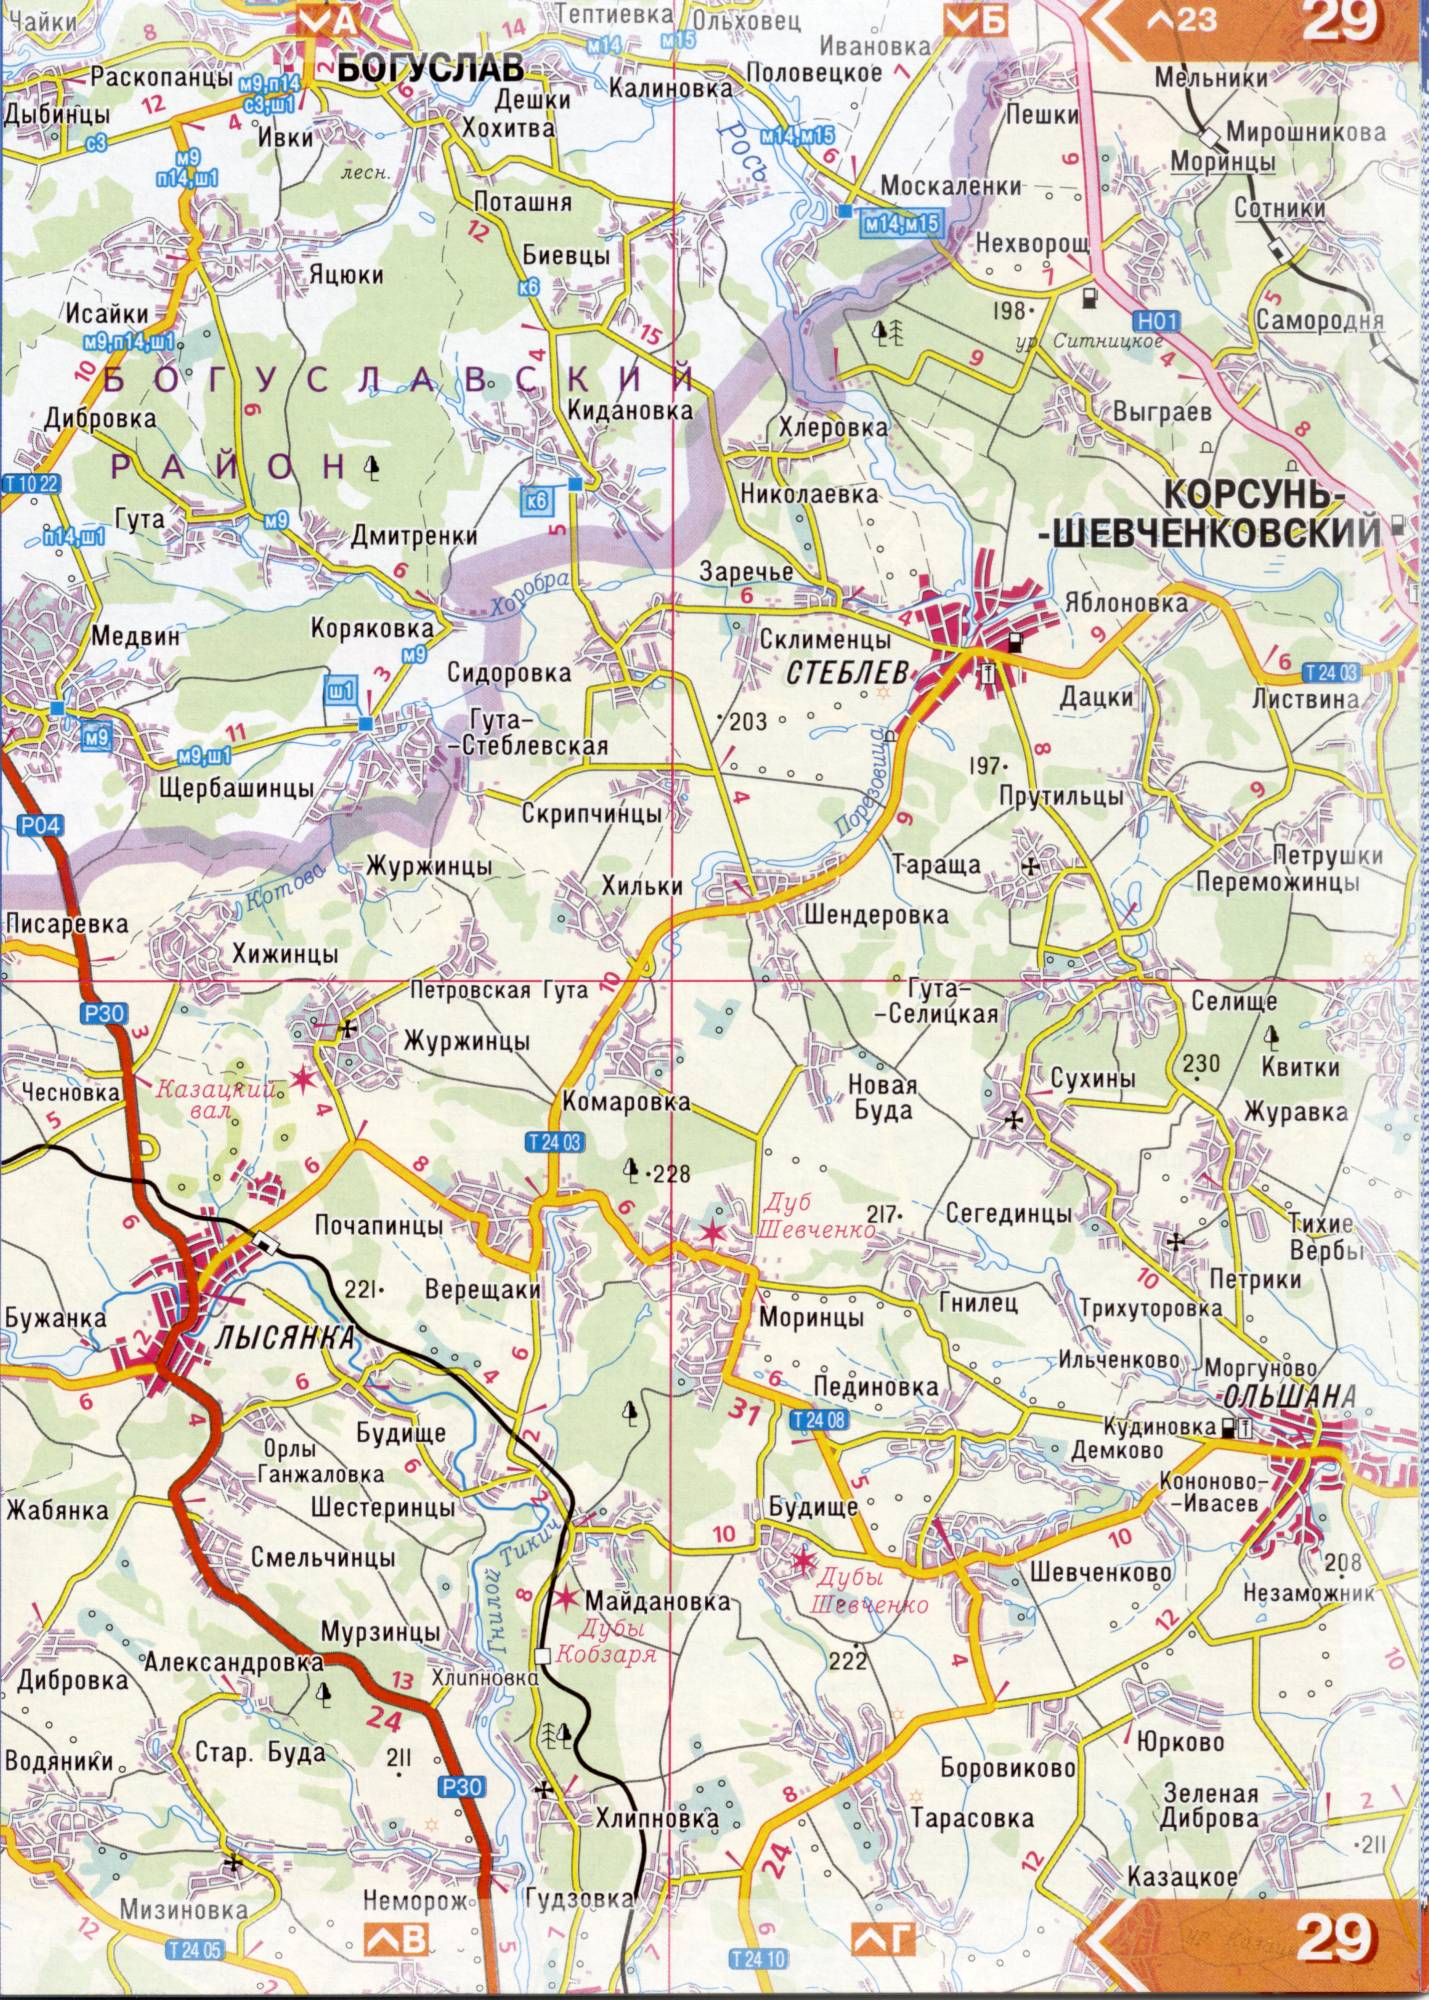 Atlas von der Region Kiew. Eine detaillierte Karte der Region Kiew von dem Atlas von Autobahnen. Kiewer Gebiet auf einer detaillierten Karte Maßstab 1cm = 3km. Frei, D5 - Bohuslav